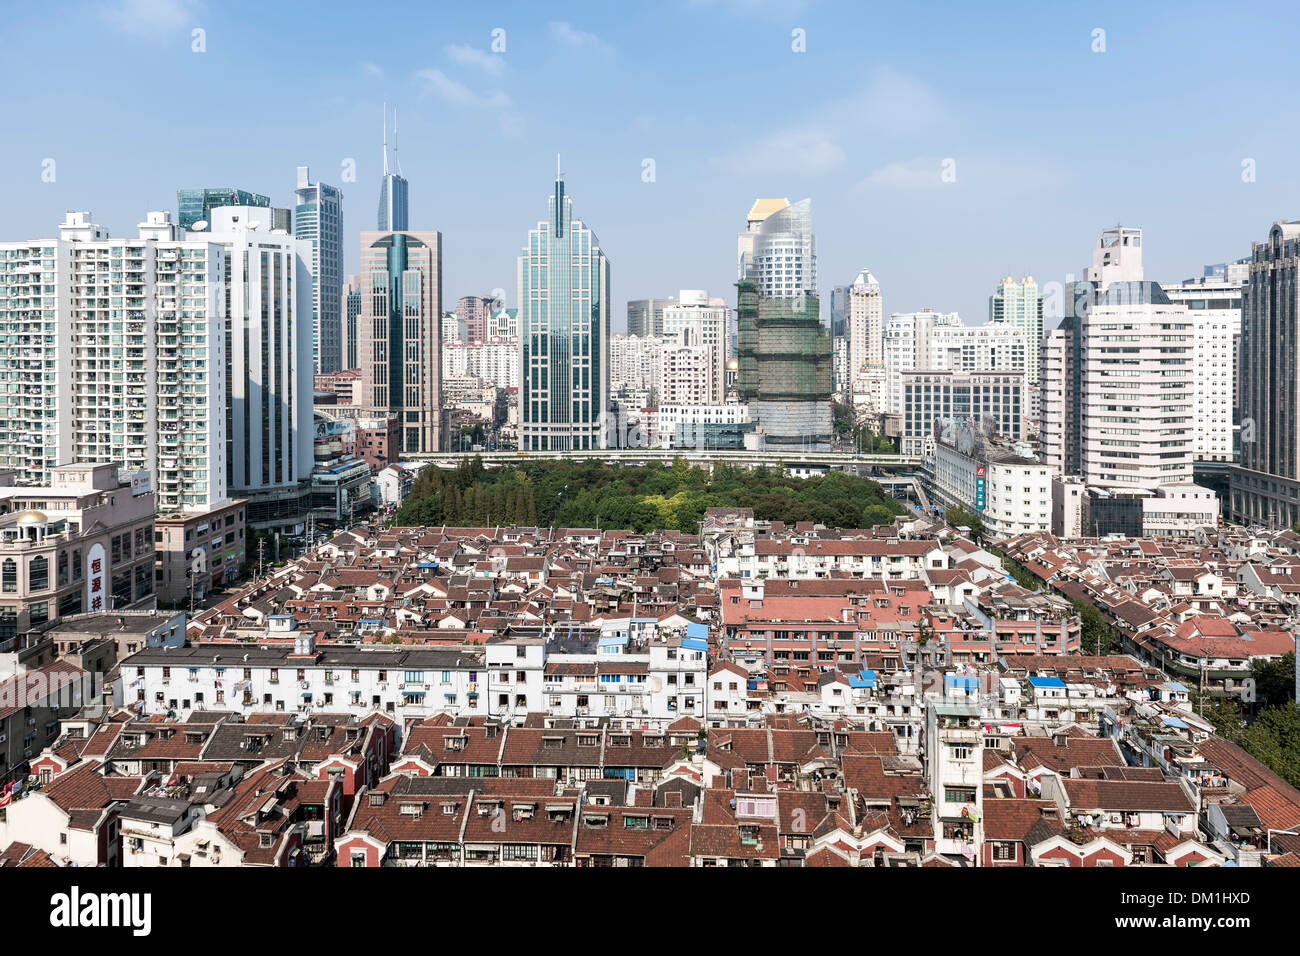 Historischen und modernen Gebäuden, Stadtgestaltung, Renmin Road, Puxi, Shanghai, China, Asien Stockfoto